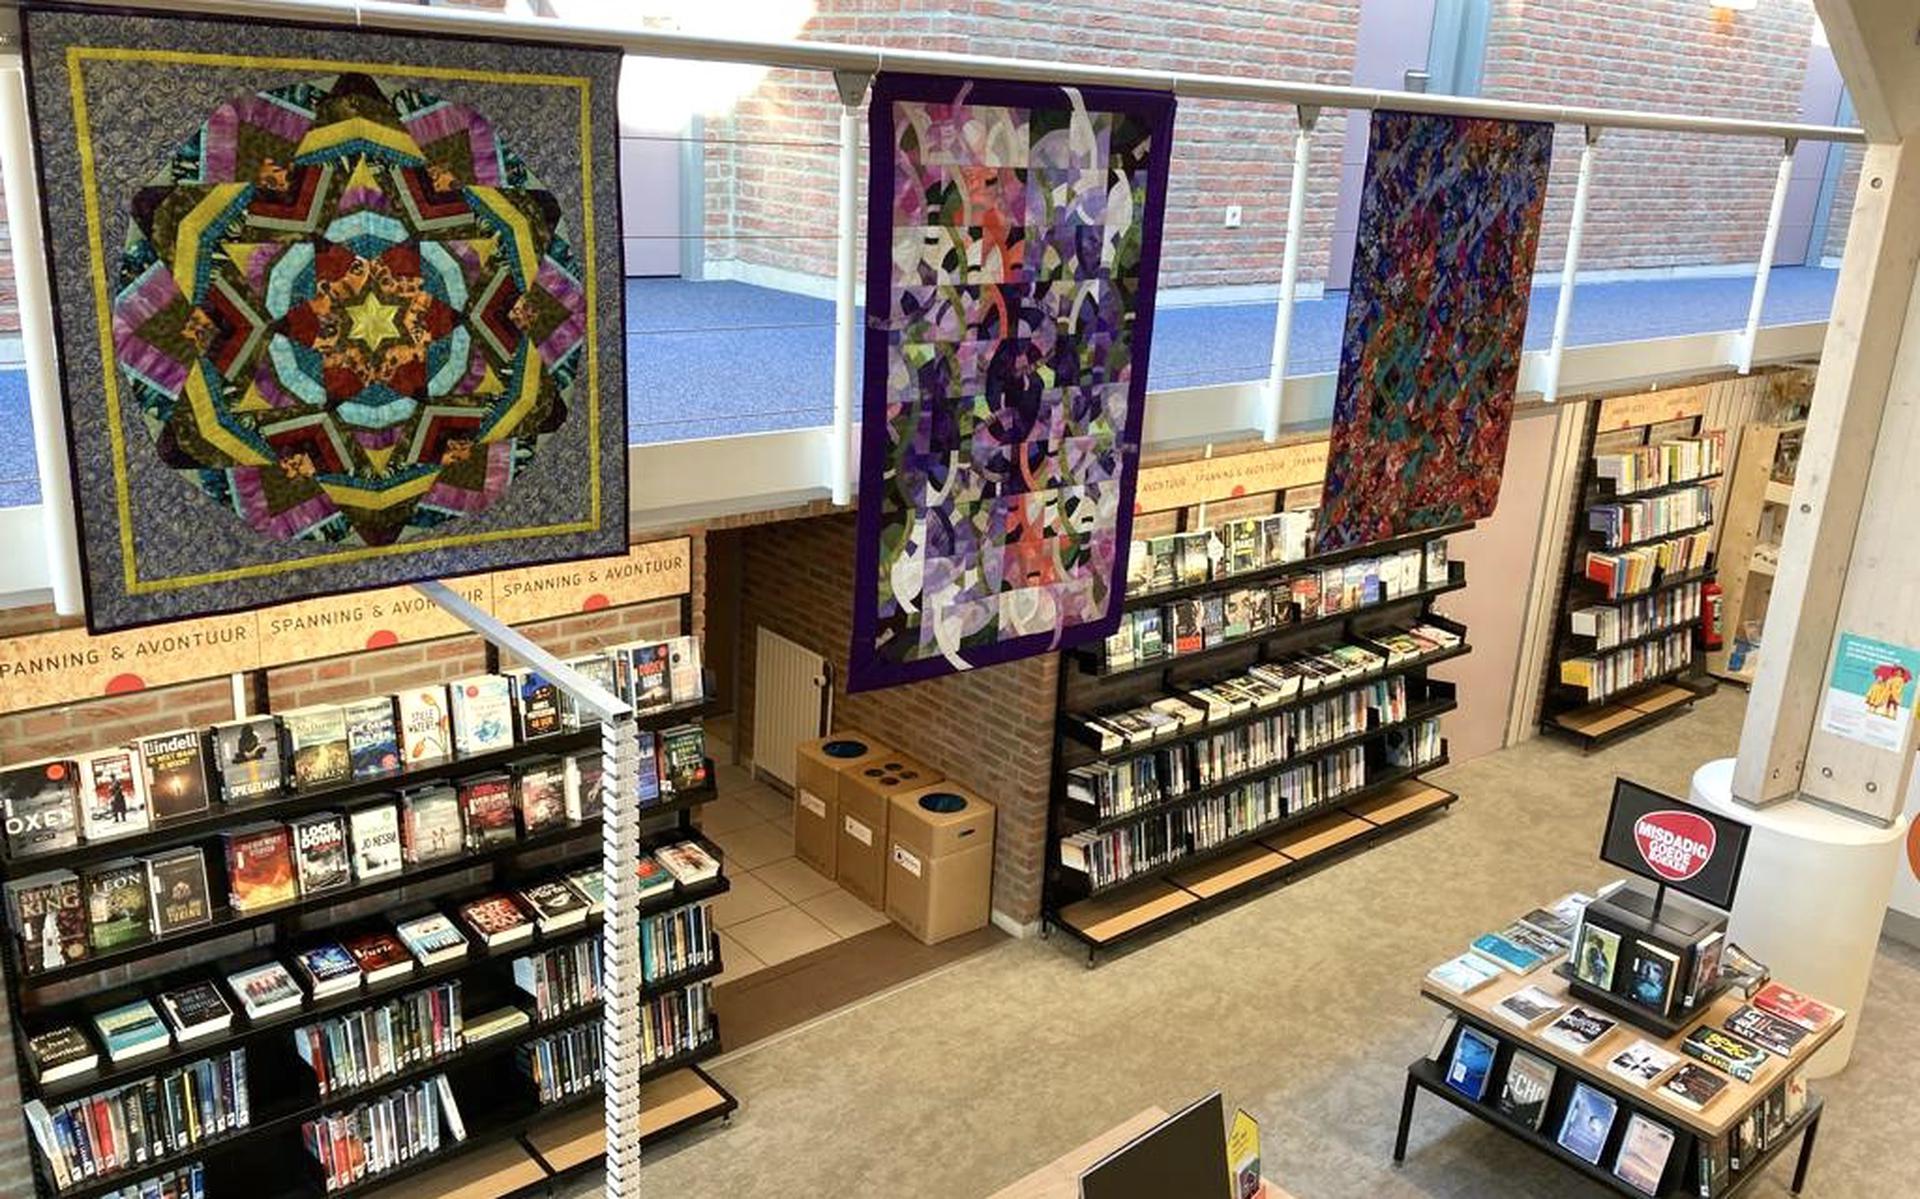 Grote quilts in de bibliotheek van Leens. Eigen foto